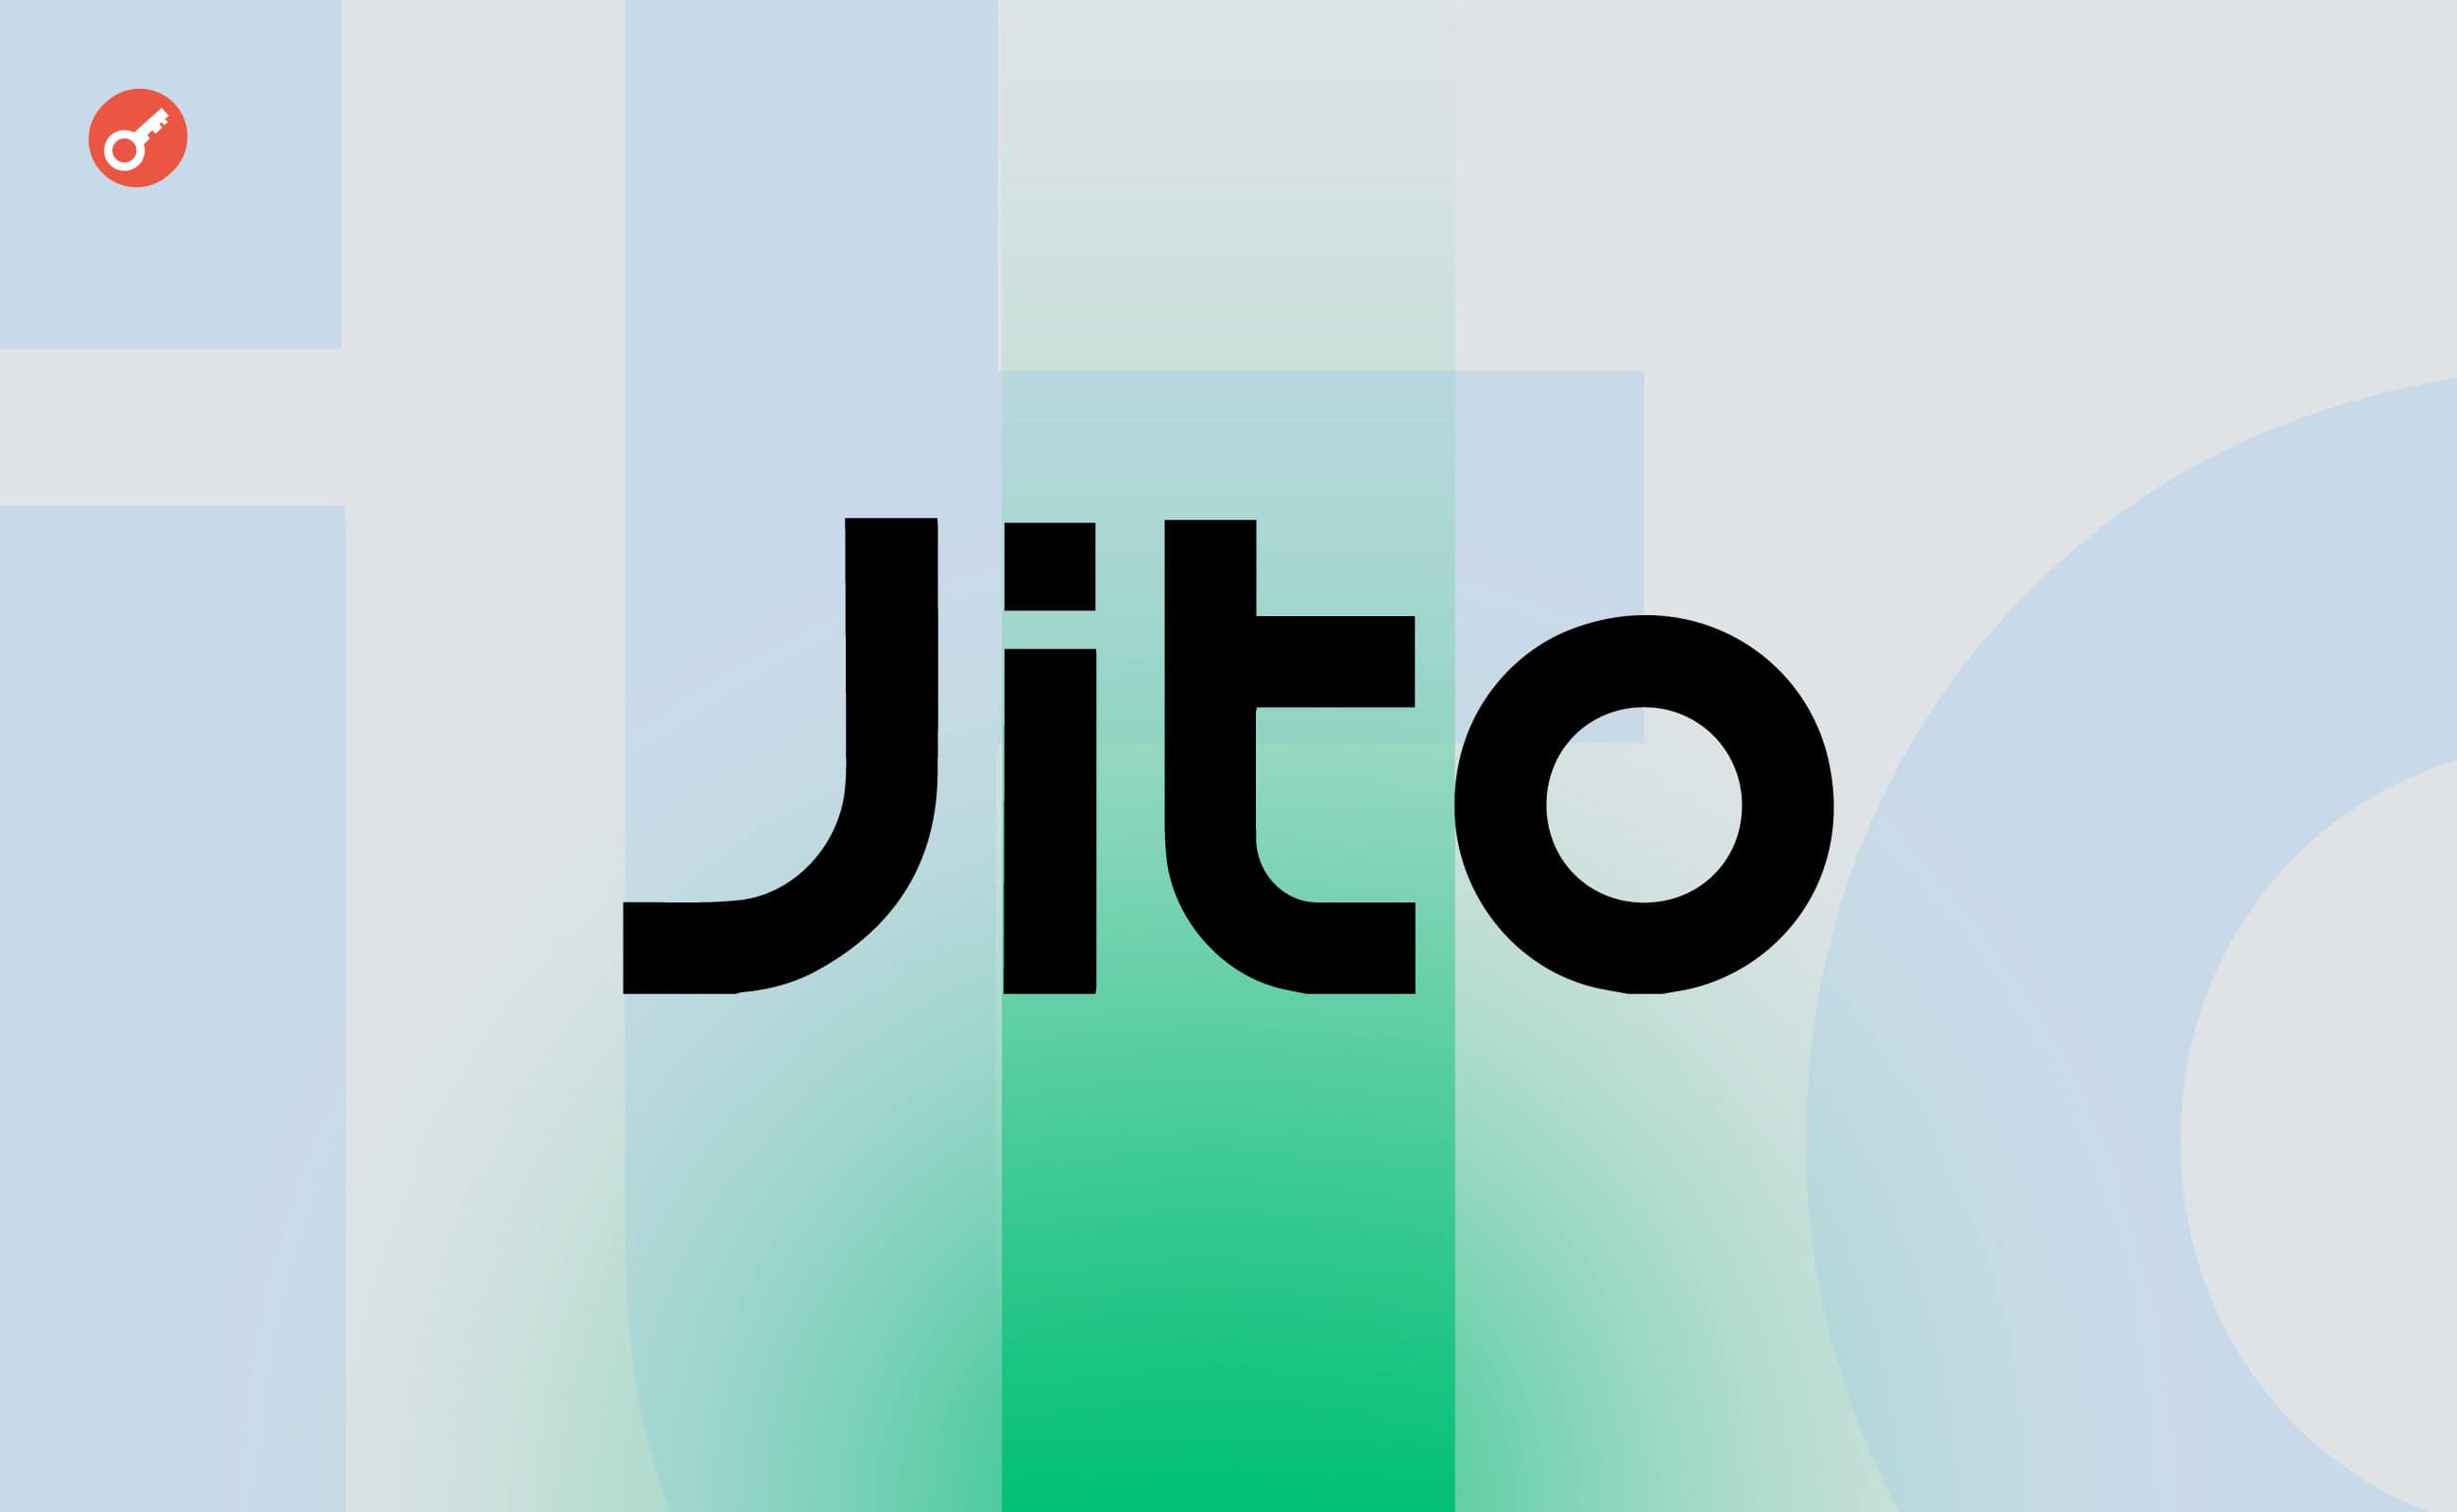 Jito став найбільшим DeFi-протоколом на Solana з $1,41 млрд TVL. Головний колаж новини.